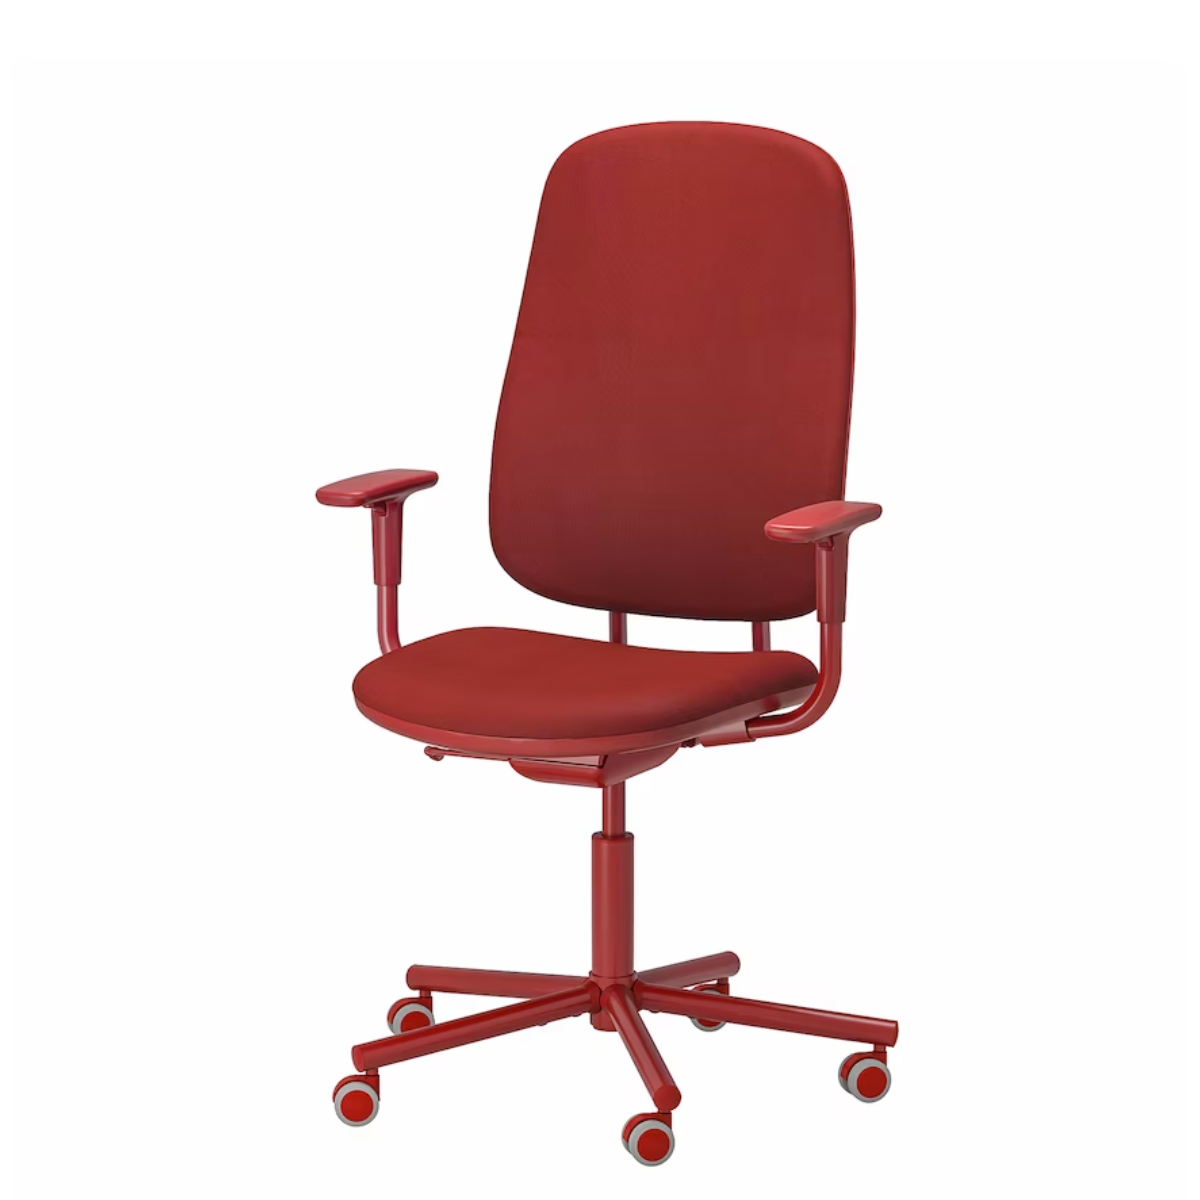 SMORKULL kancelarijska stolica s rukohvatima, Grasnas crvena